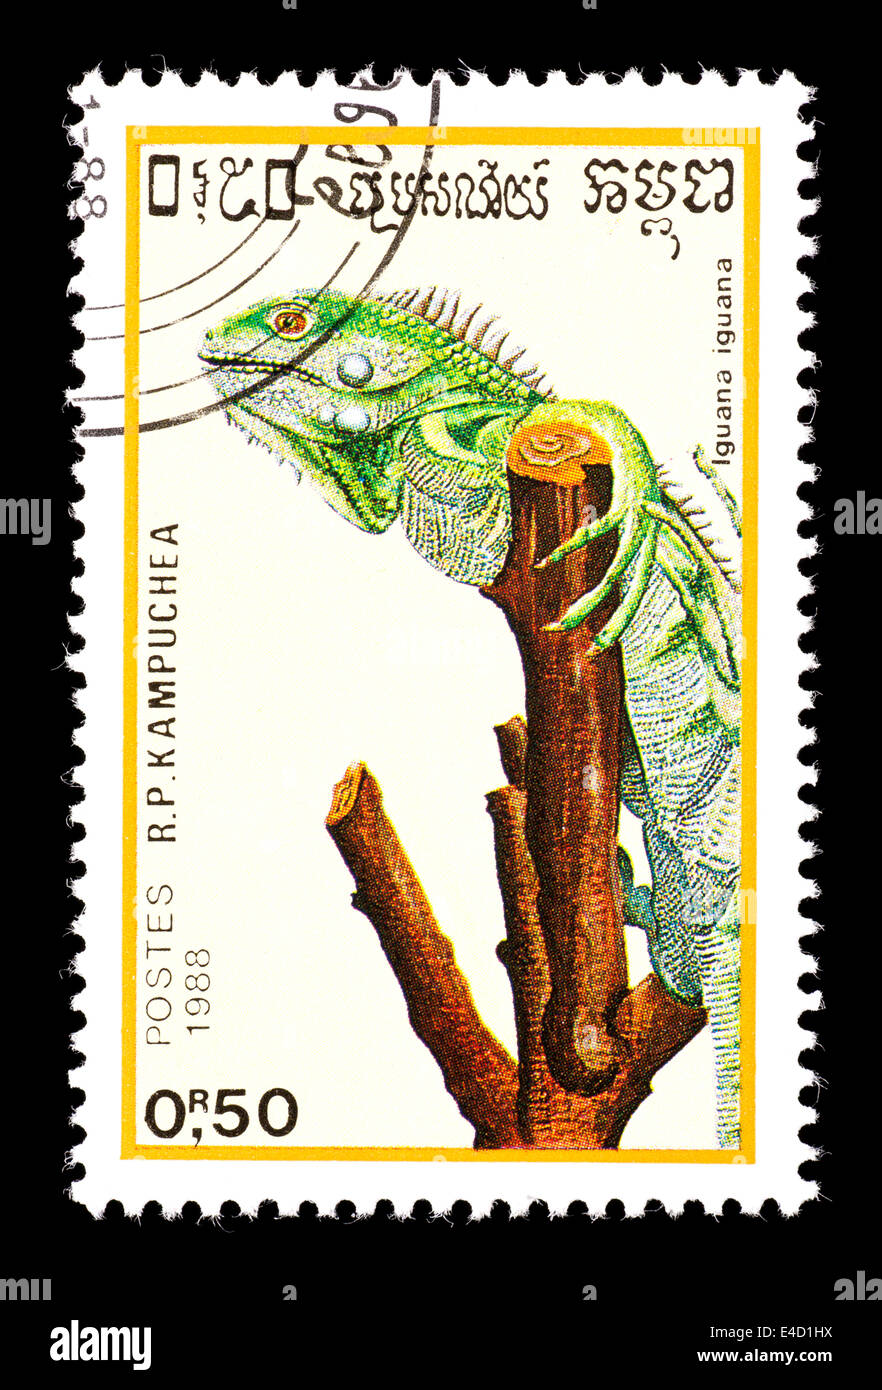 Postage stamp from Cambodia (Kampuchea) depicting a green iguana (Iguana iguana). Stock Photo